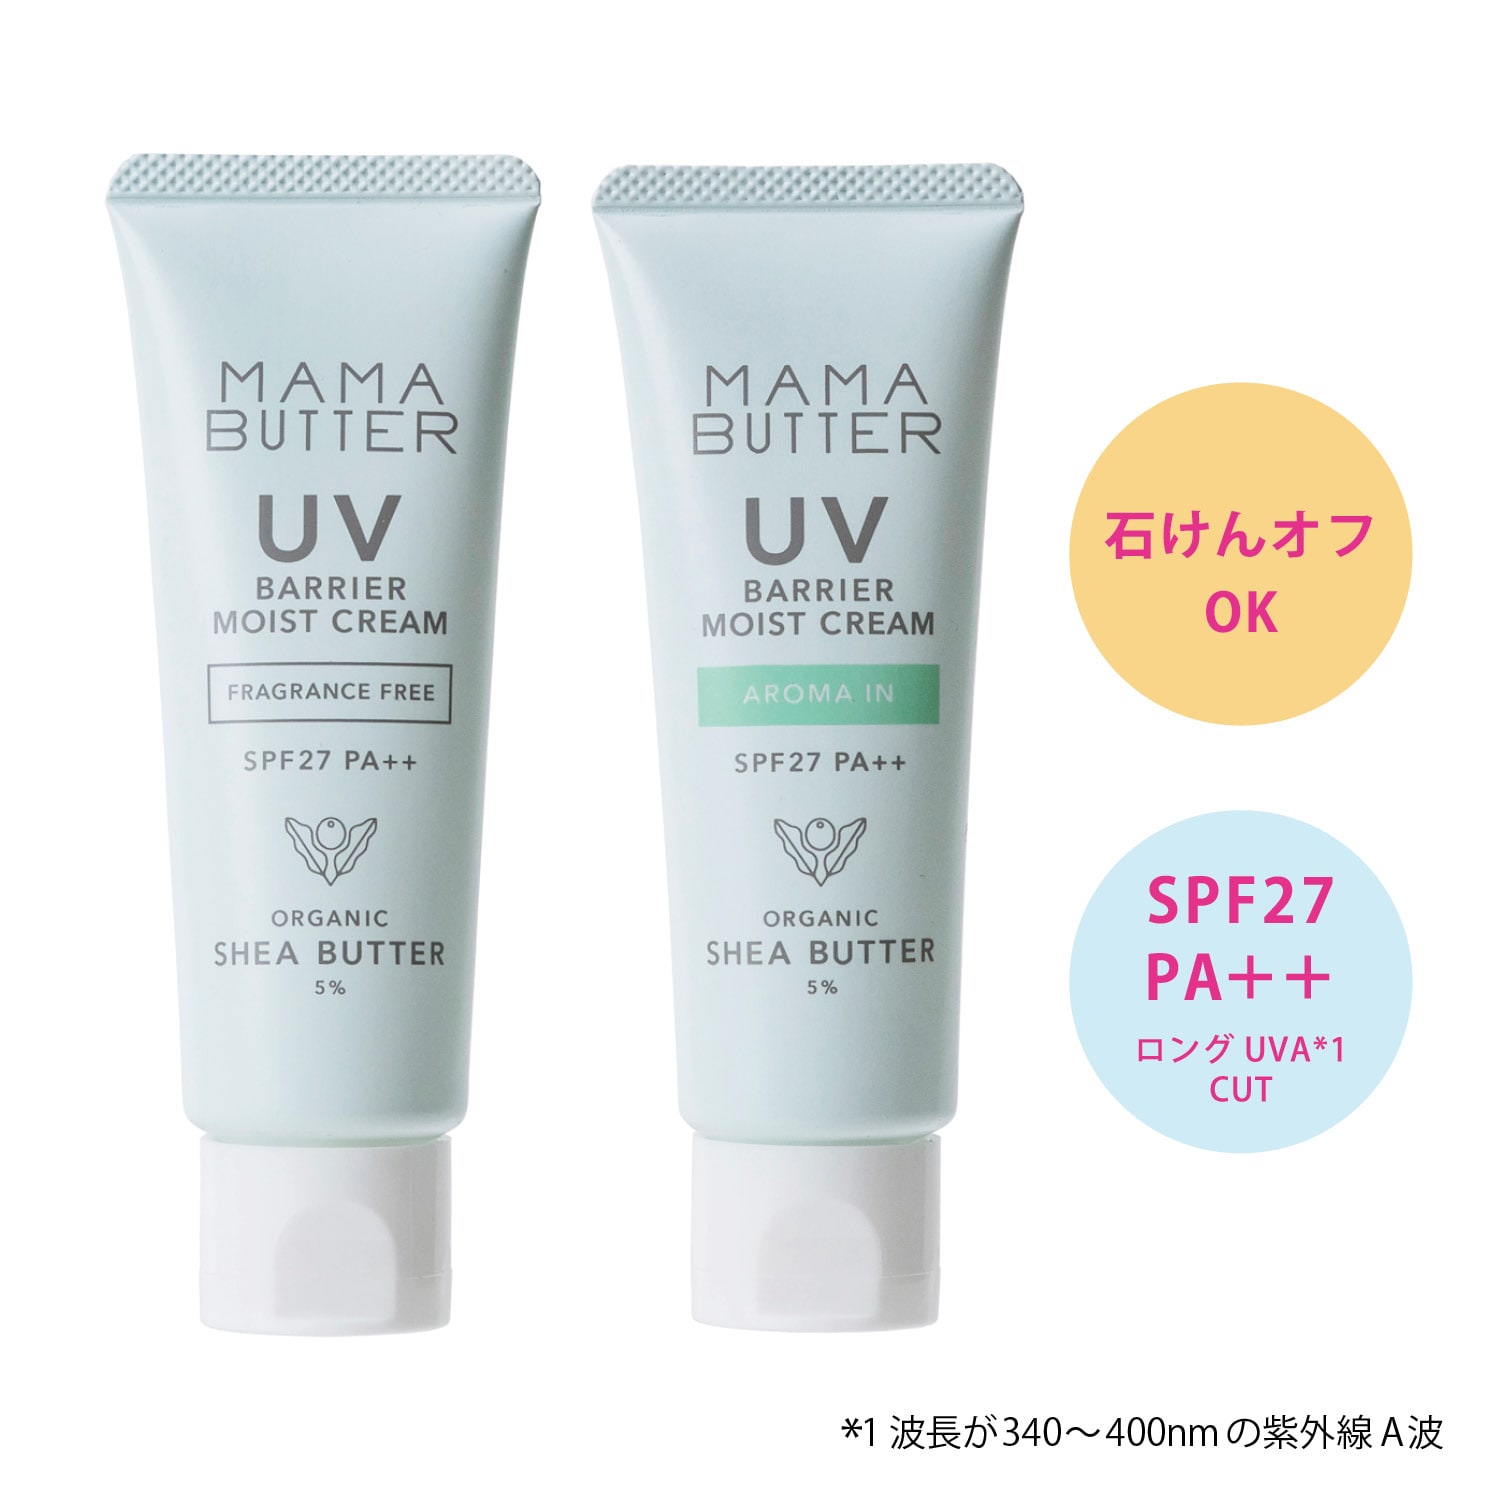 【ママバター】UVバリア モイストクリーム SPF27/PA++画像